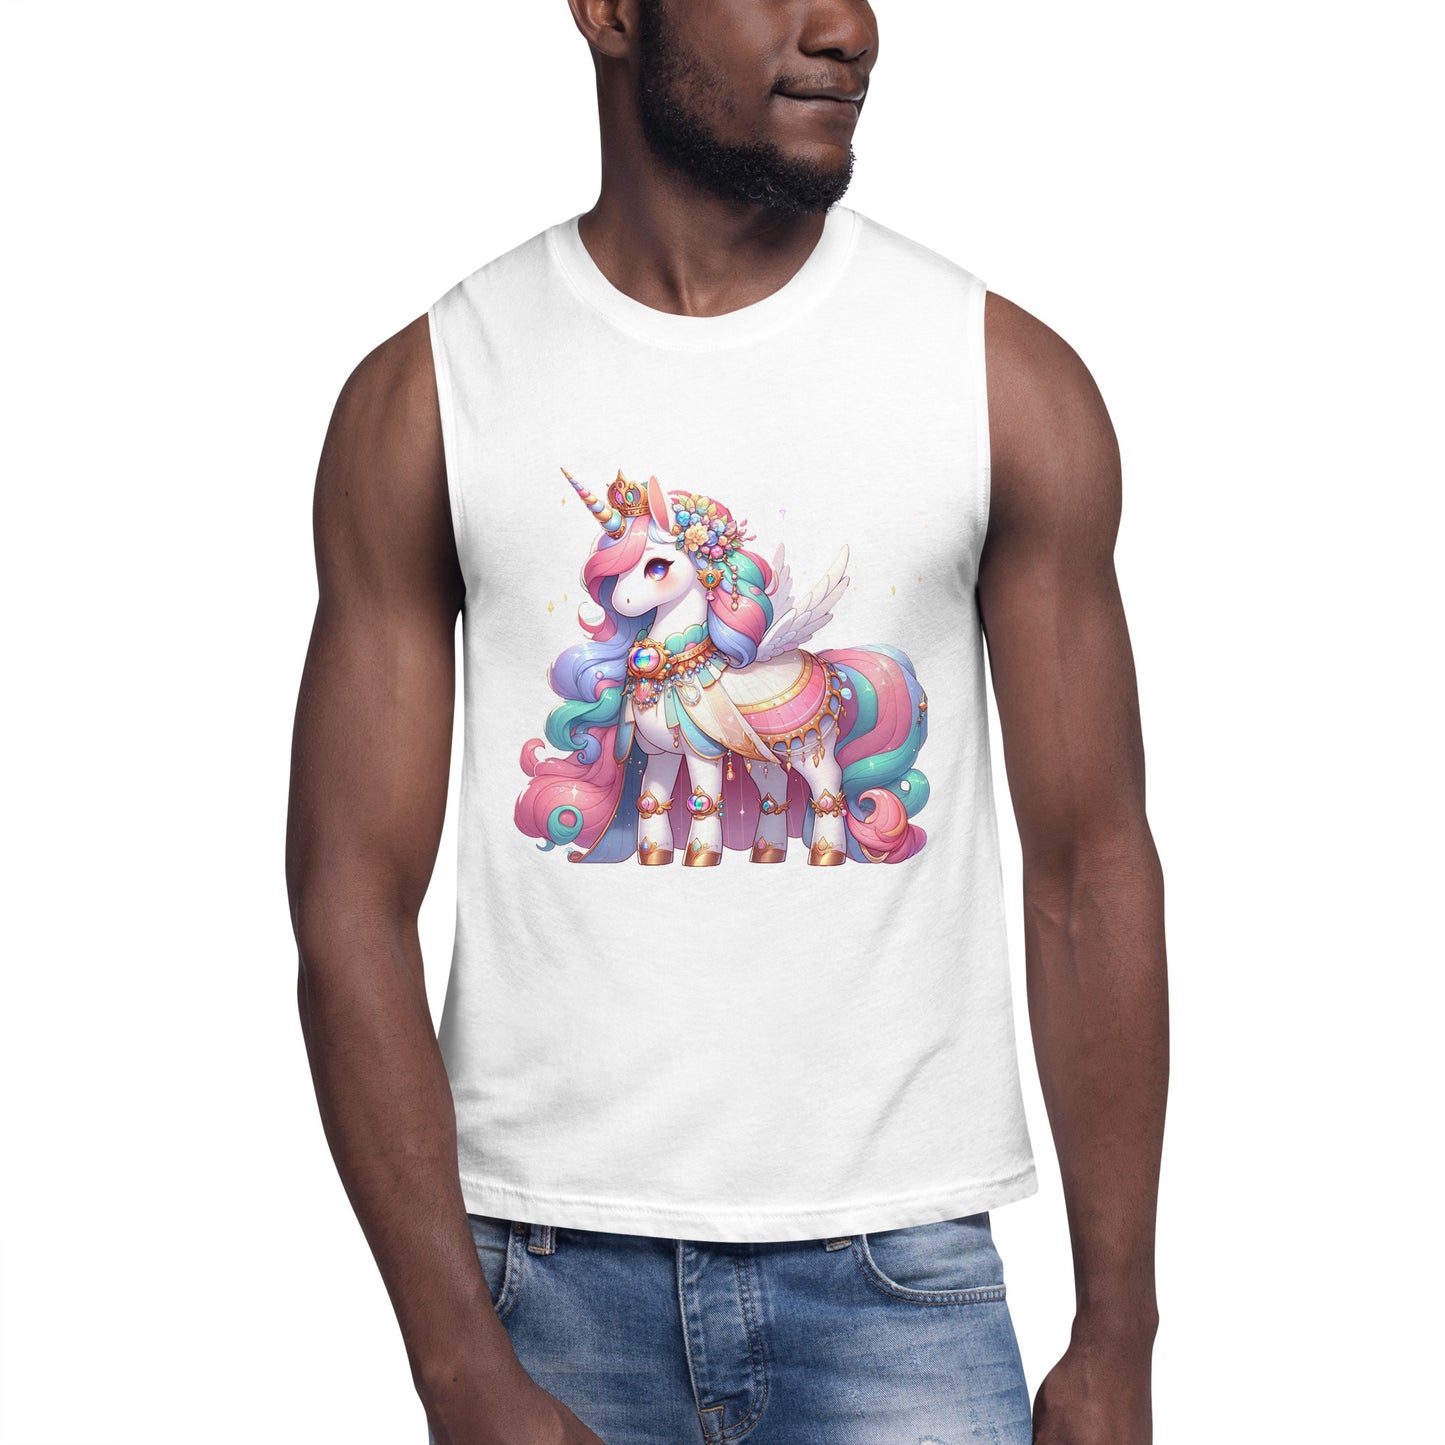 Unicorn Princess Muscle Shirt by #unicorntrends